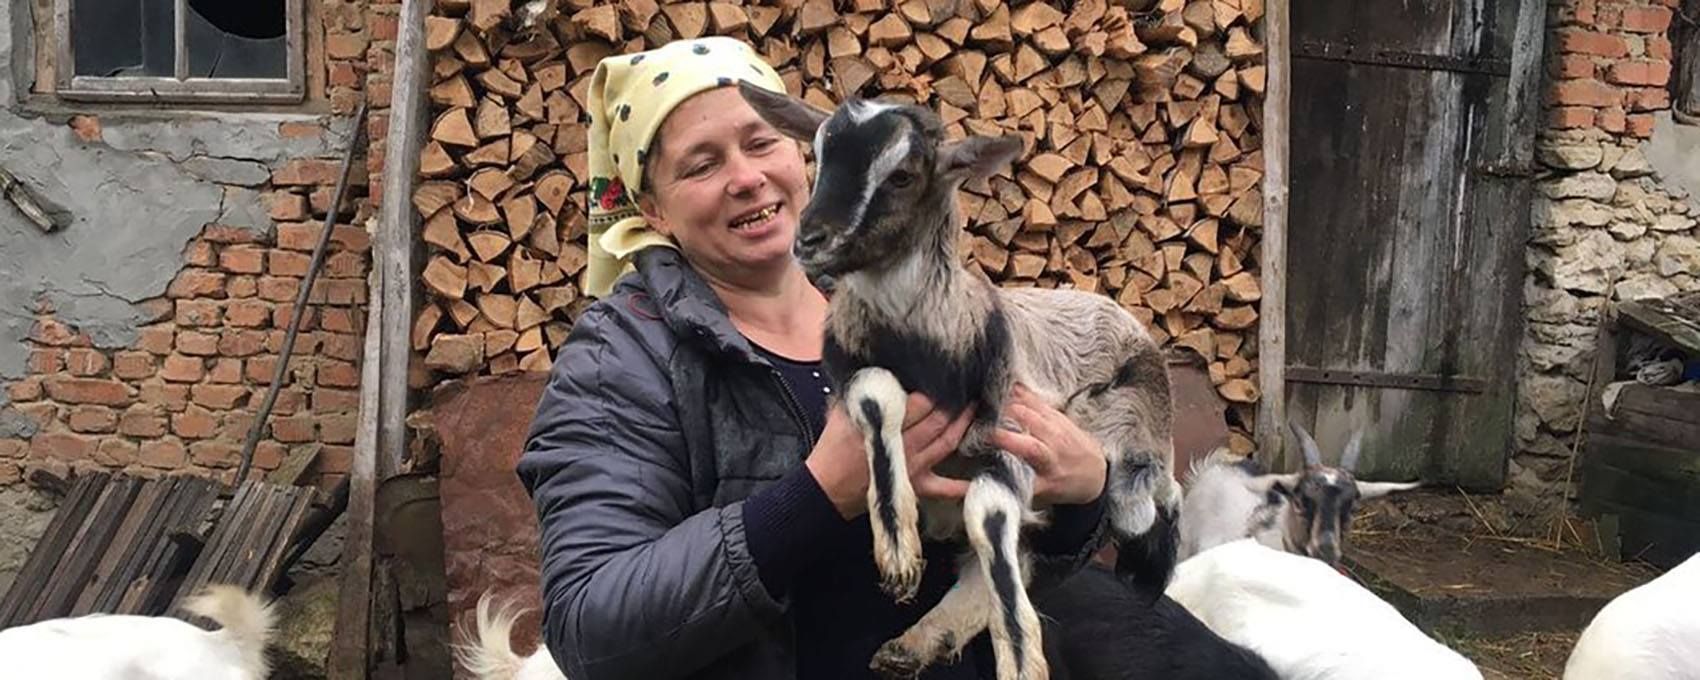 На Тернопільщині жінка знімає влоги про сільське життя